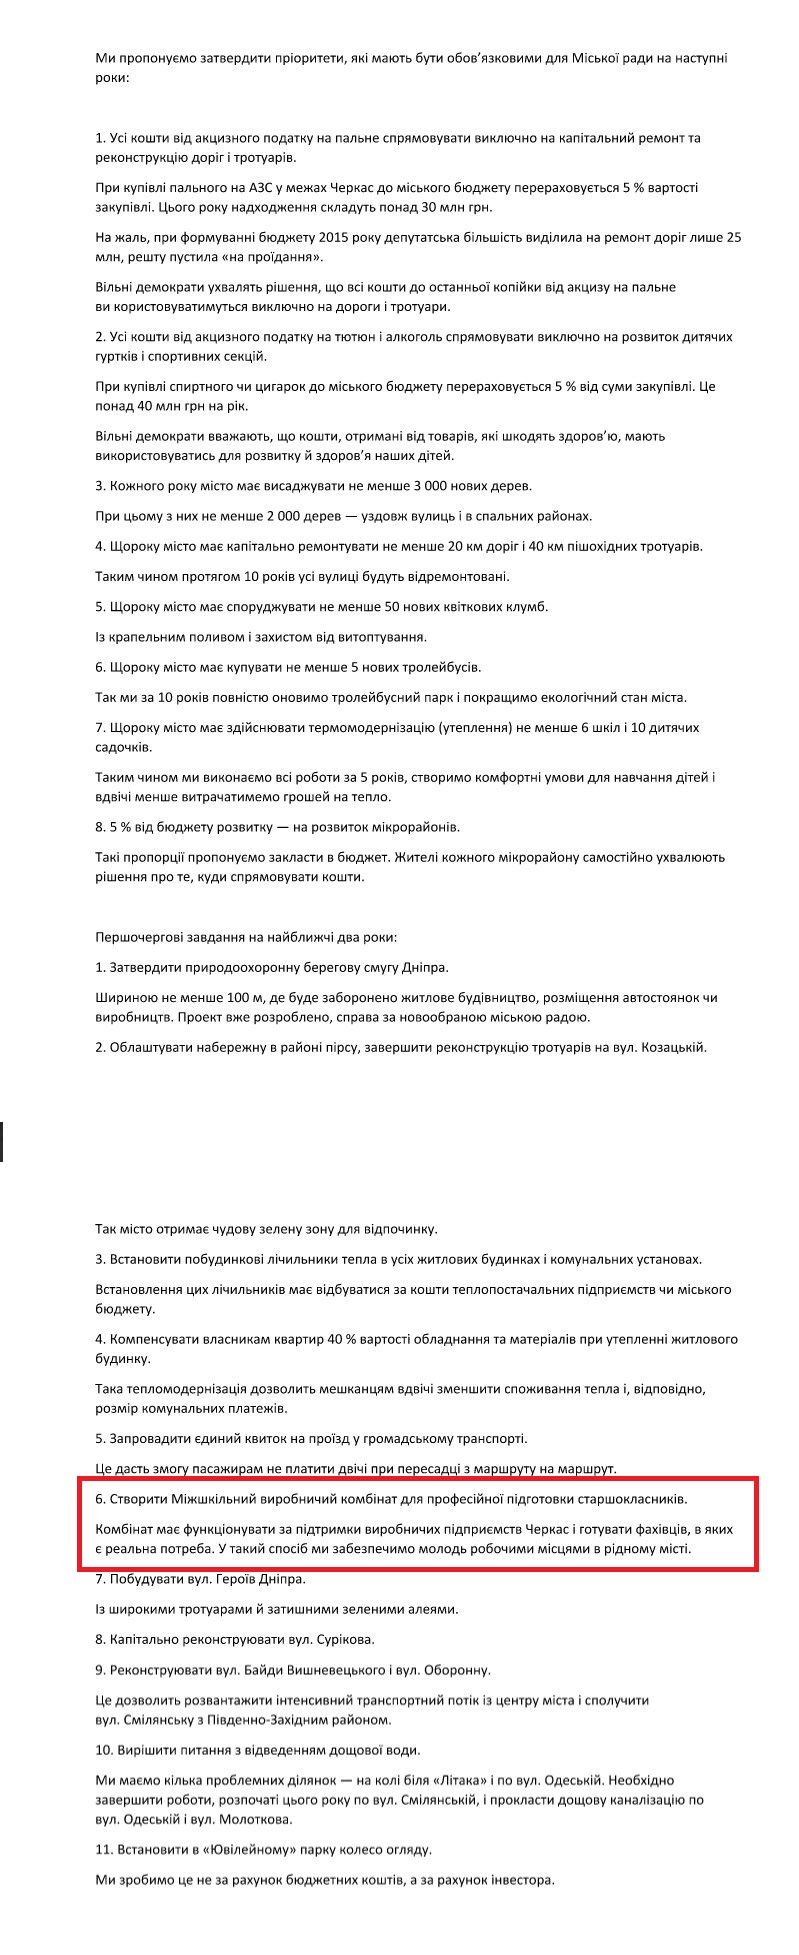 Передвиборна програма Сергія Одарича на місцеві вибори 2015 року